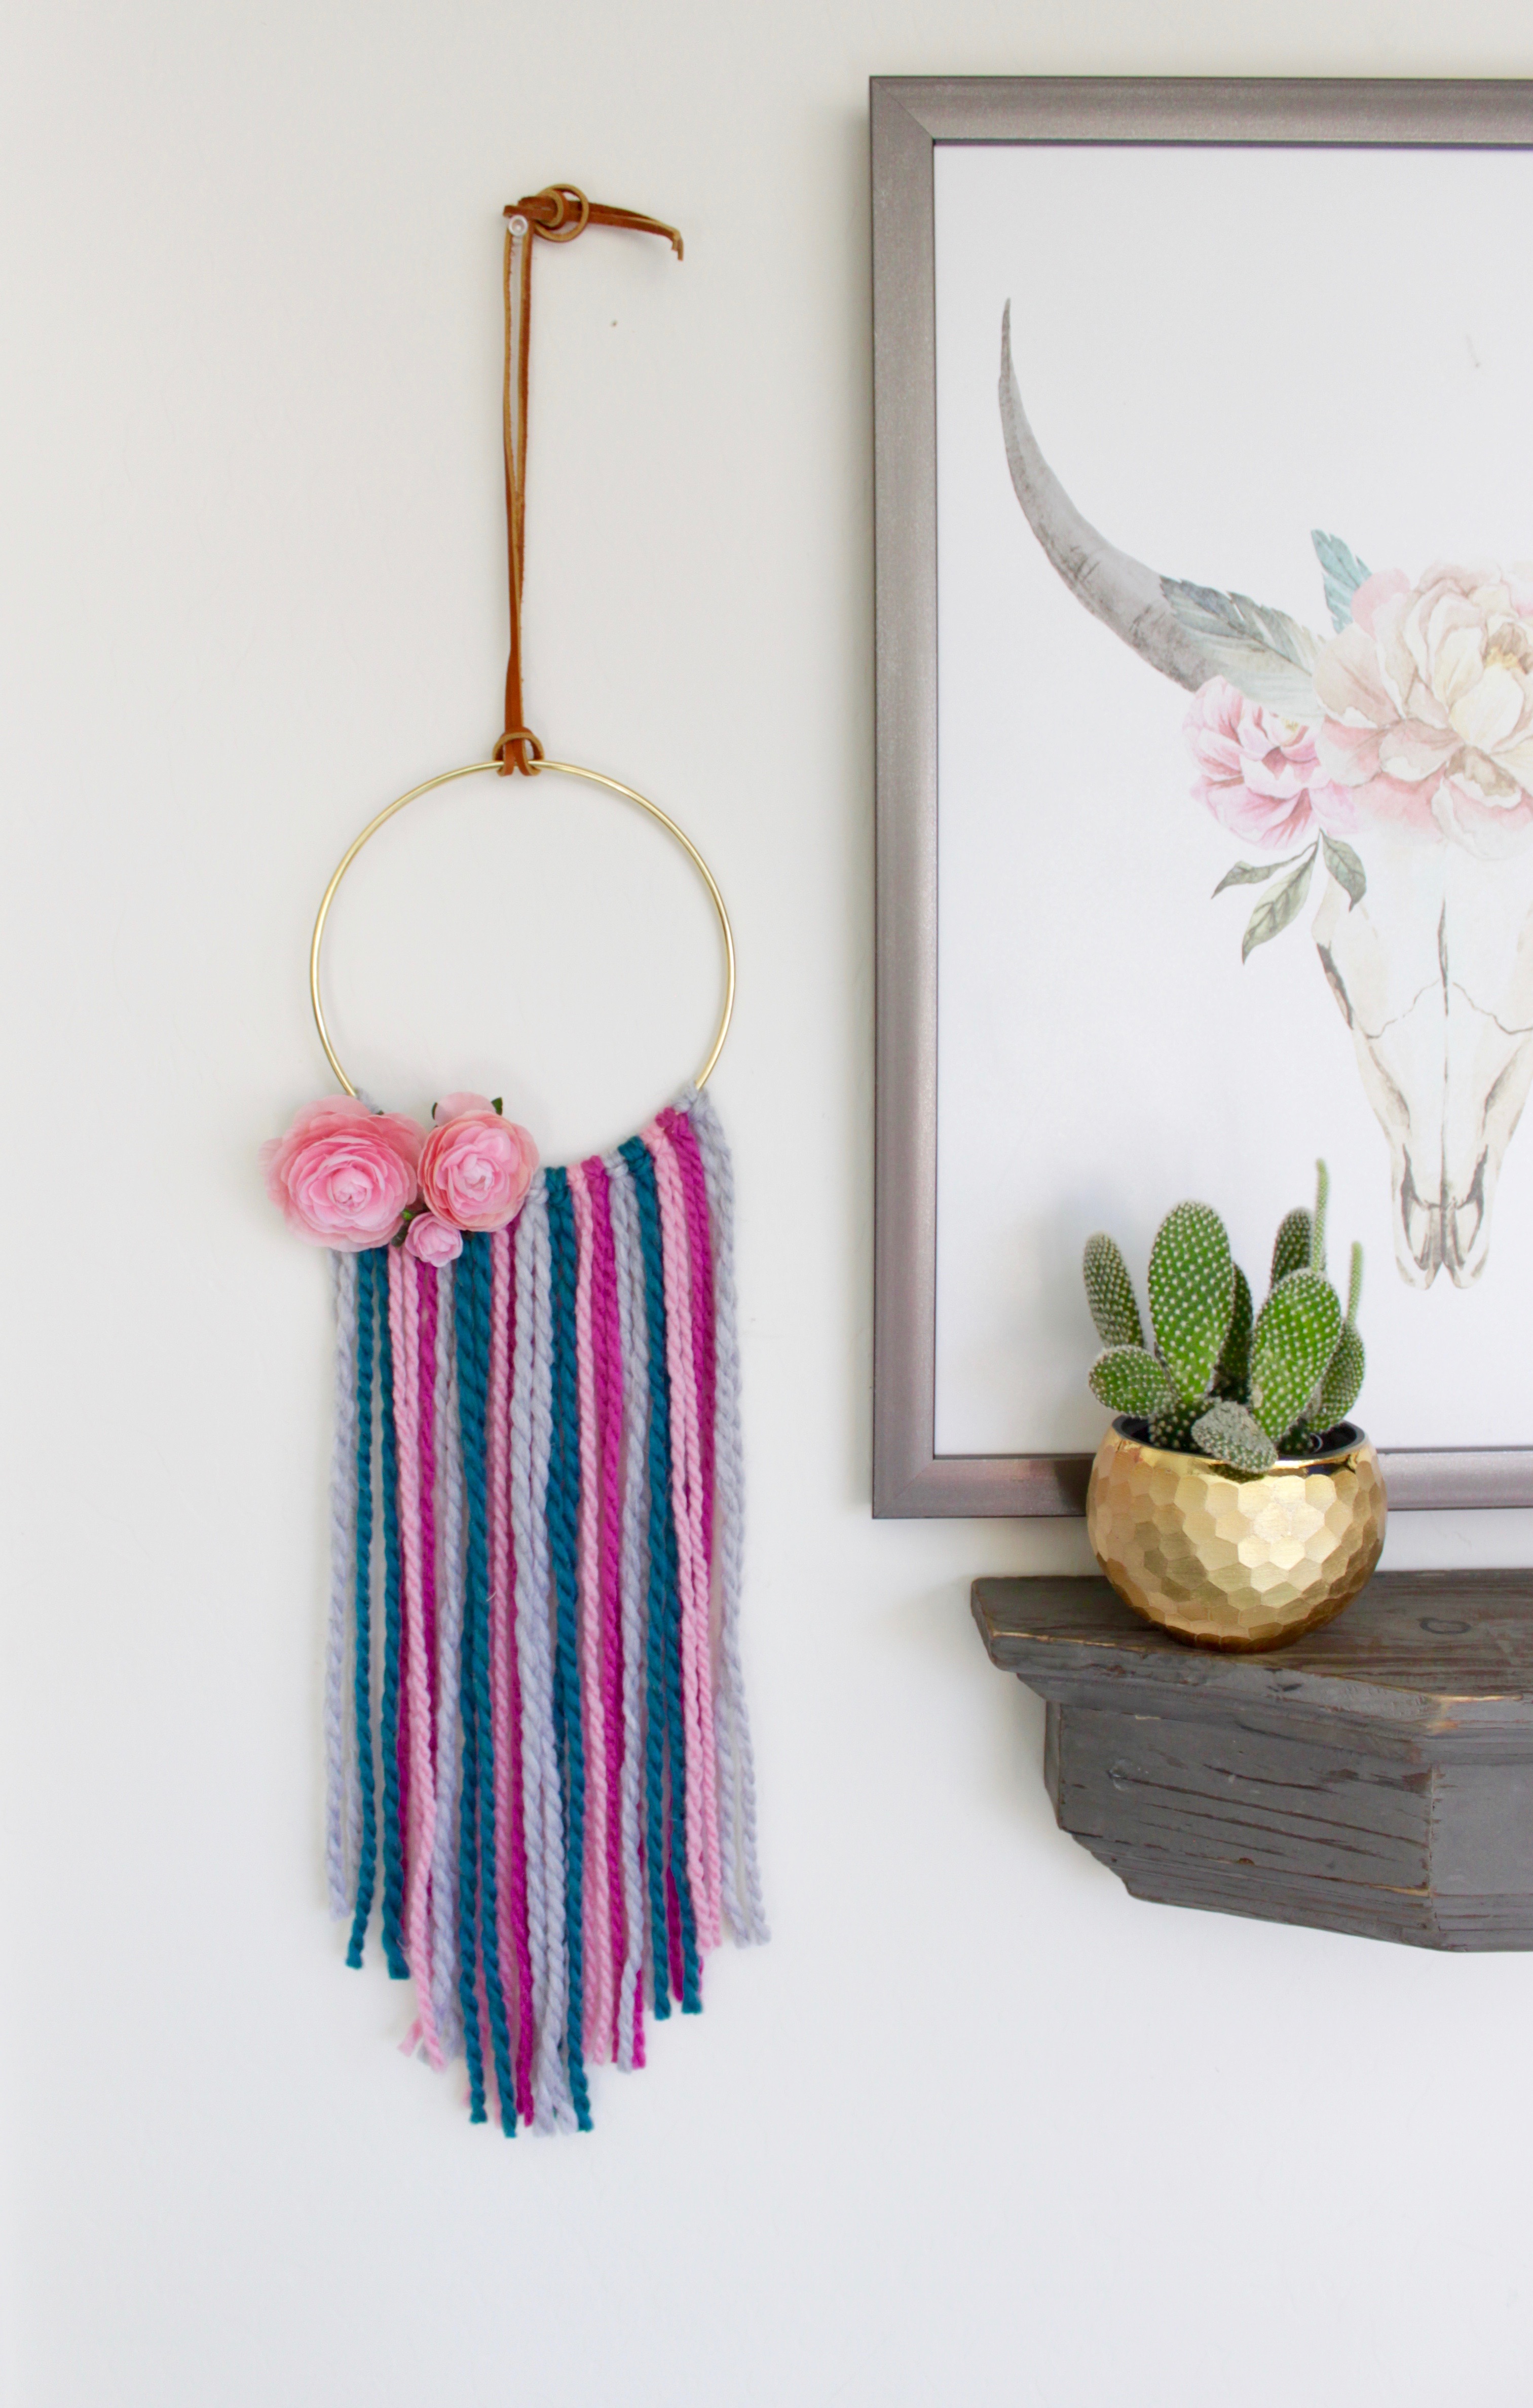 DIY Wall Hangings Tutorial - Yarn with Metal Hoop